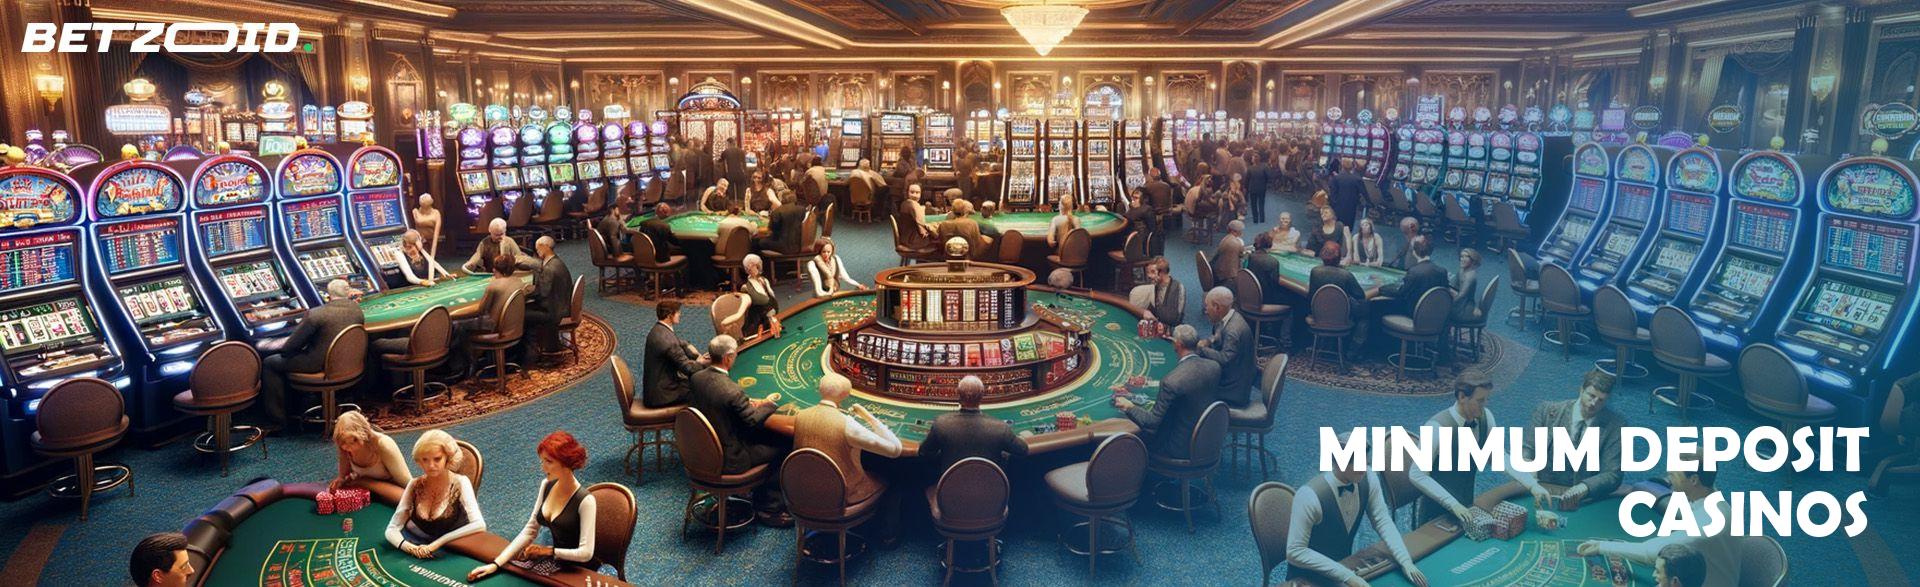 Minimum Deposit Casinos.